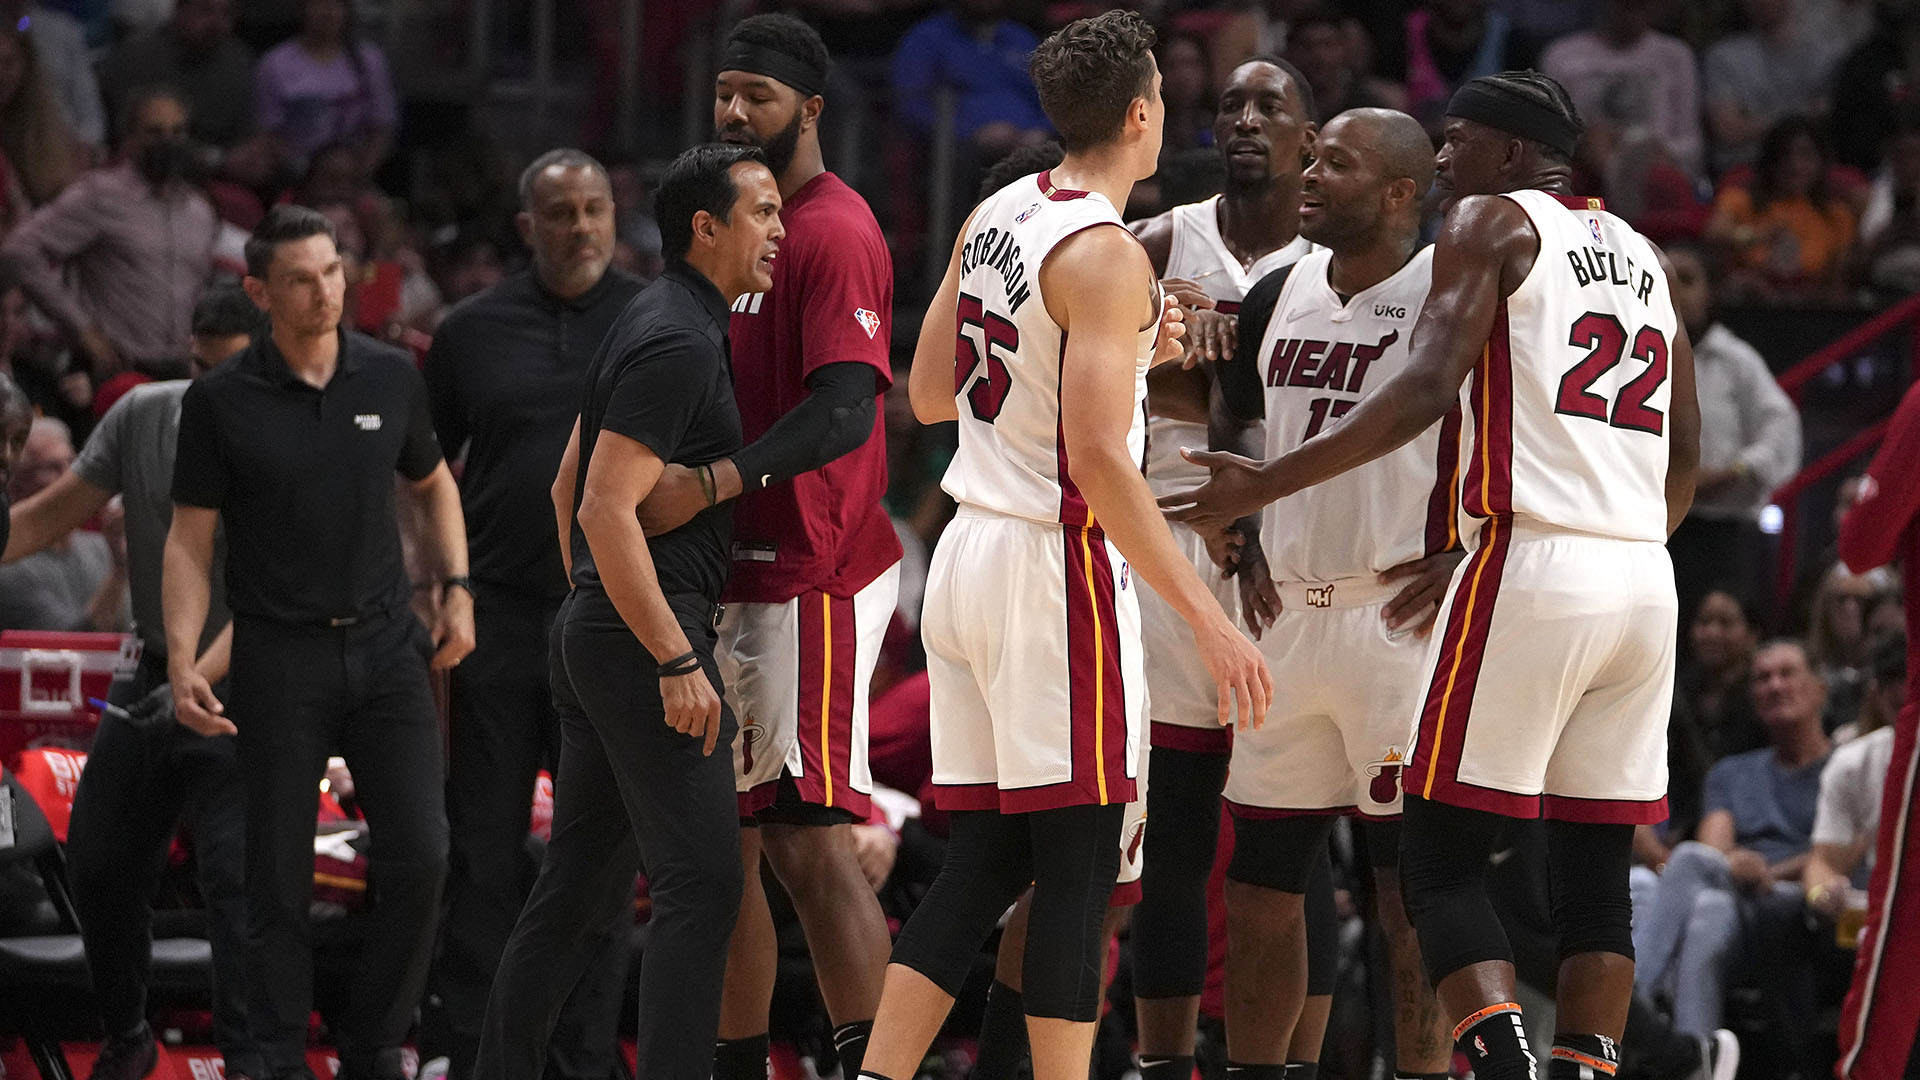 Miami Heat sonhou com armador e deixou elenco enfraquecido